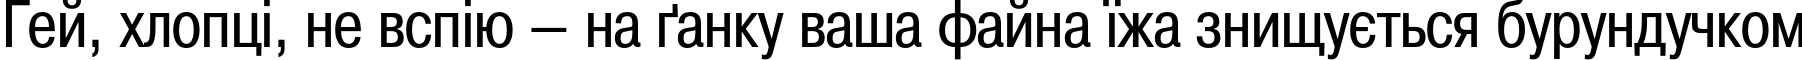 Пример написания шрифтом PragmaticaCondC текста на украинском